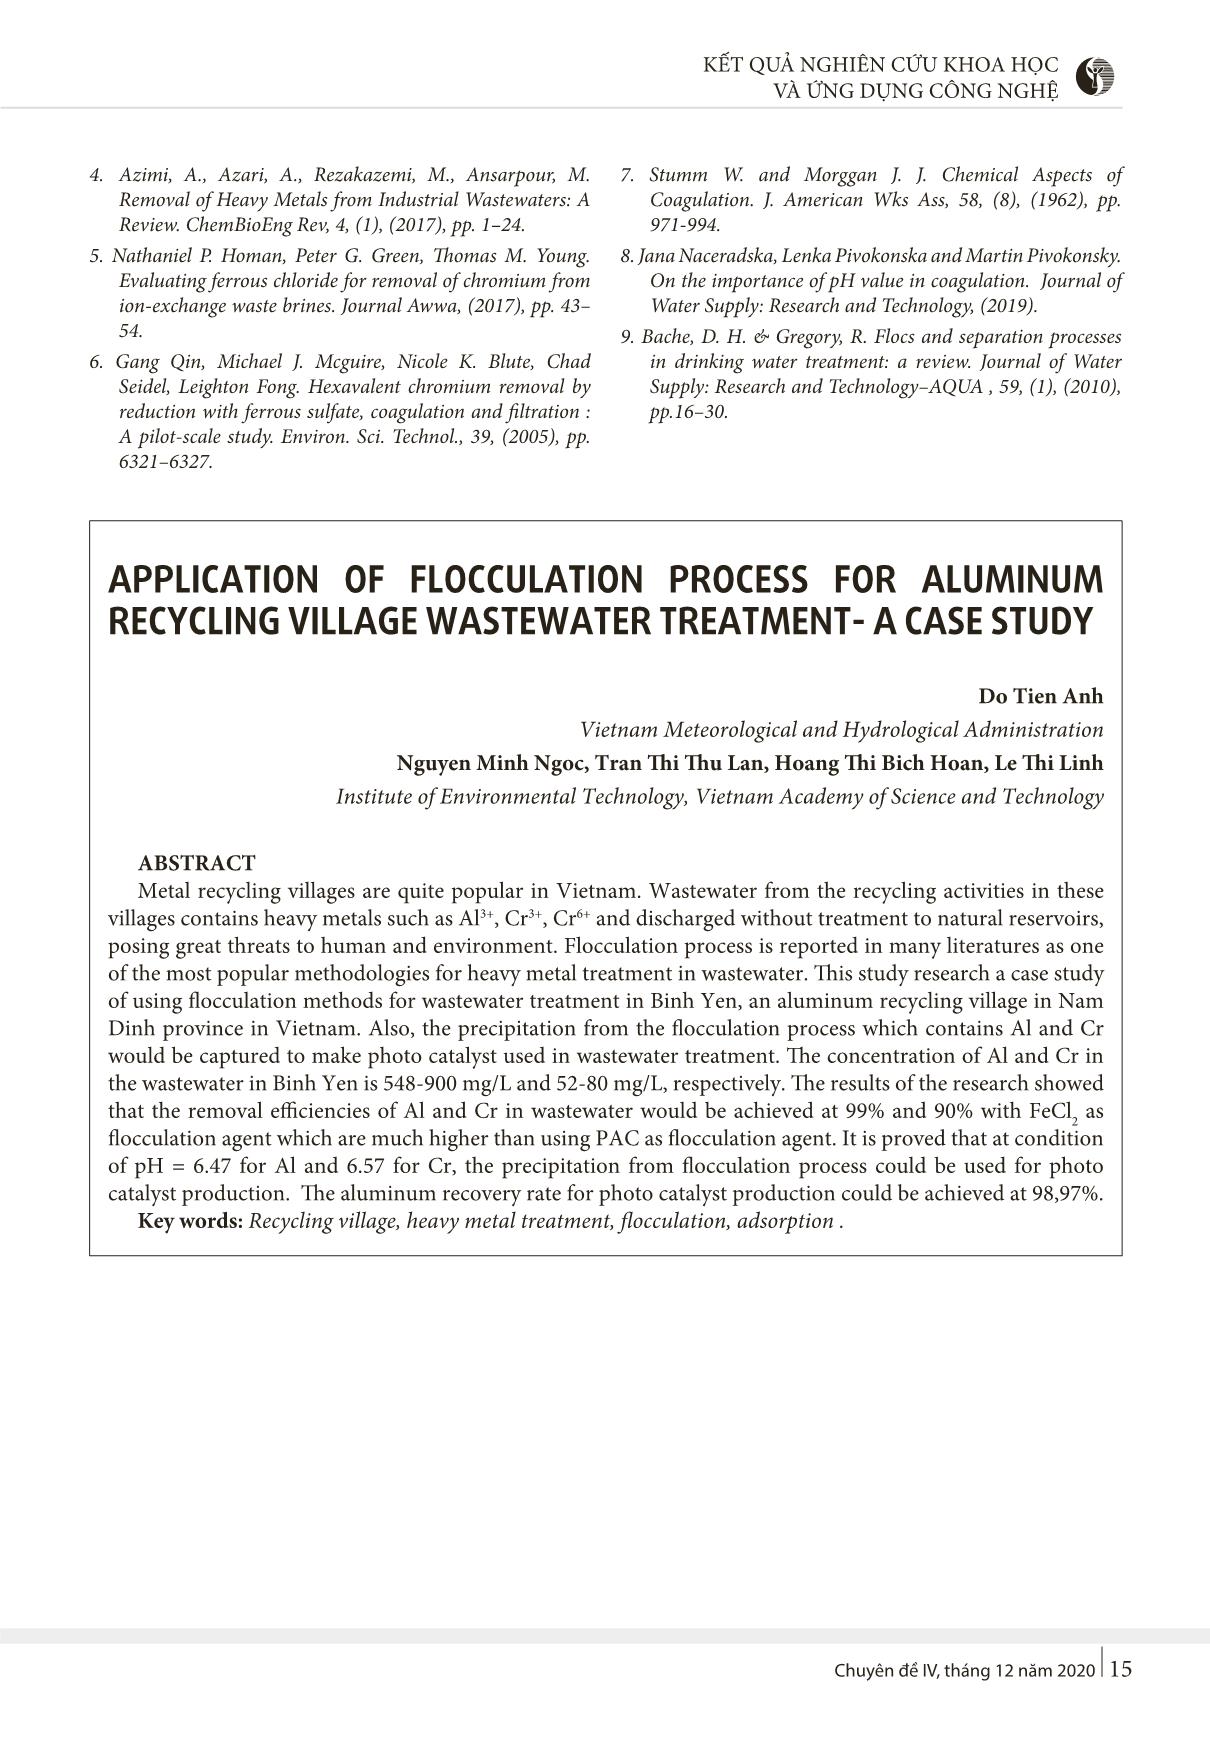 Nghiên cứu khả năng xử lý Al, Cr trong nước thải làng nghề tái chế nhôm bằng phương pháp keo tụ trang 8